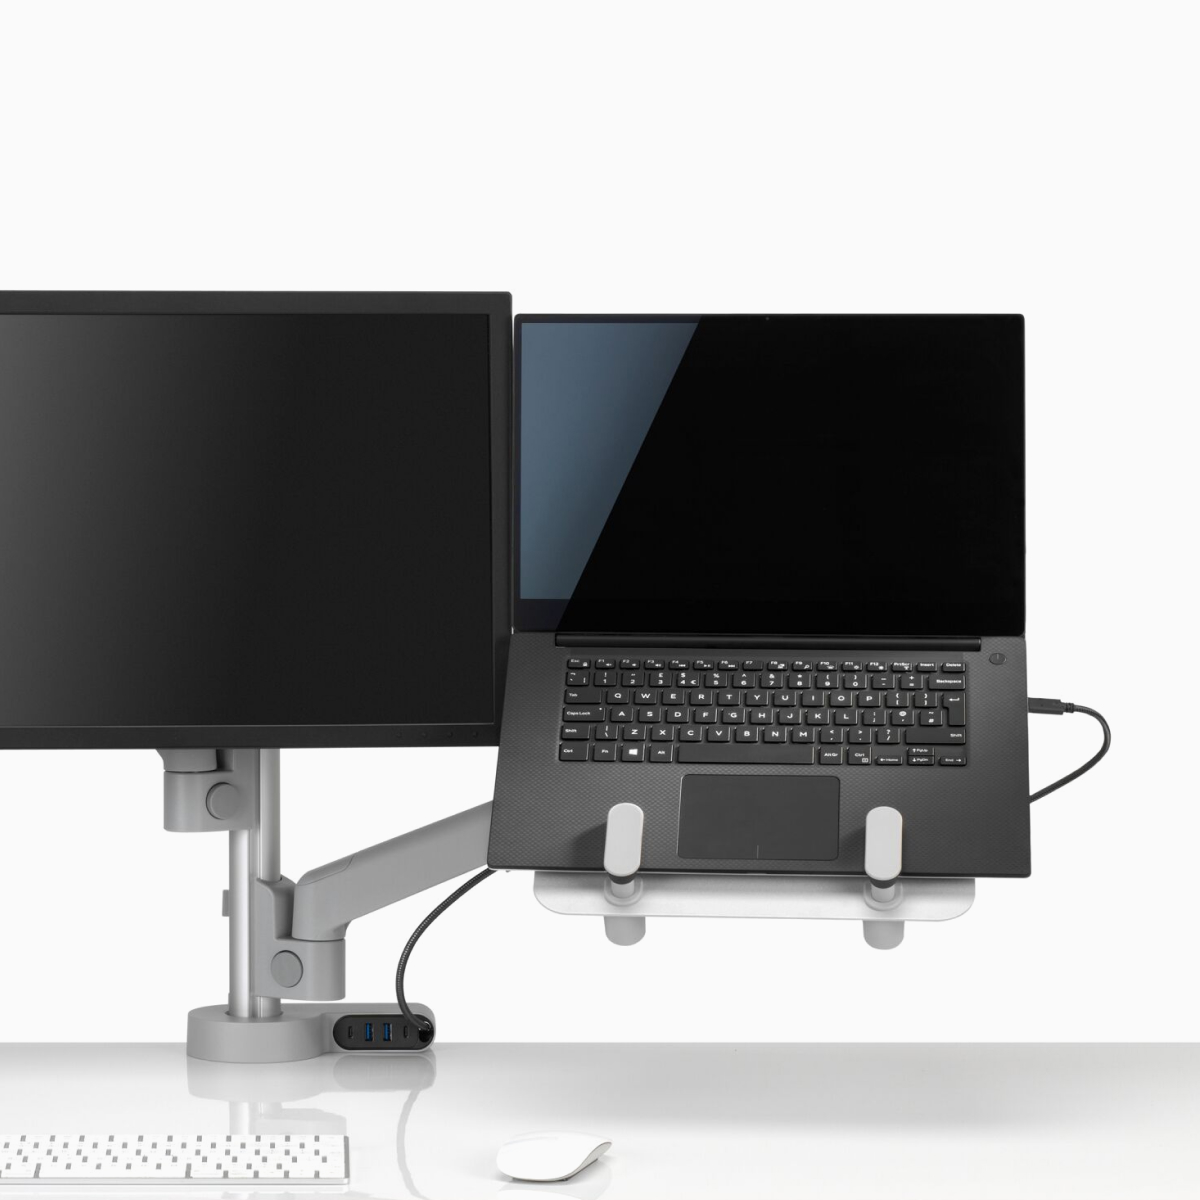 Vista de frente de un brazo articulado para monitor Lima en una configuración dual integrada a un soporte para computadora portátil Lima y un módulo de conectividad Ondo.